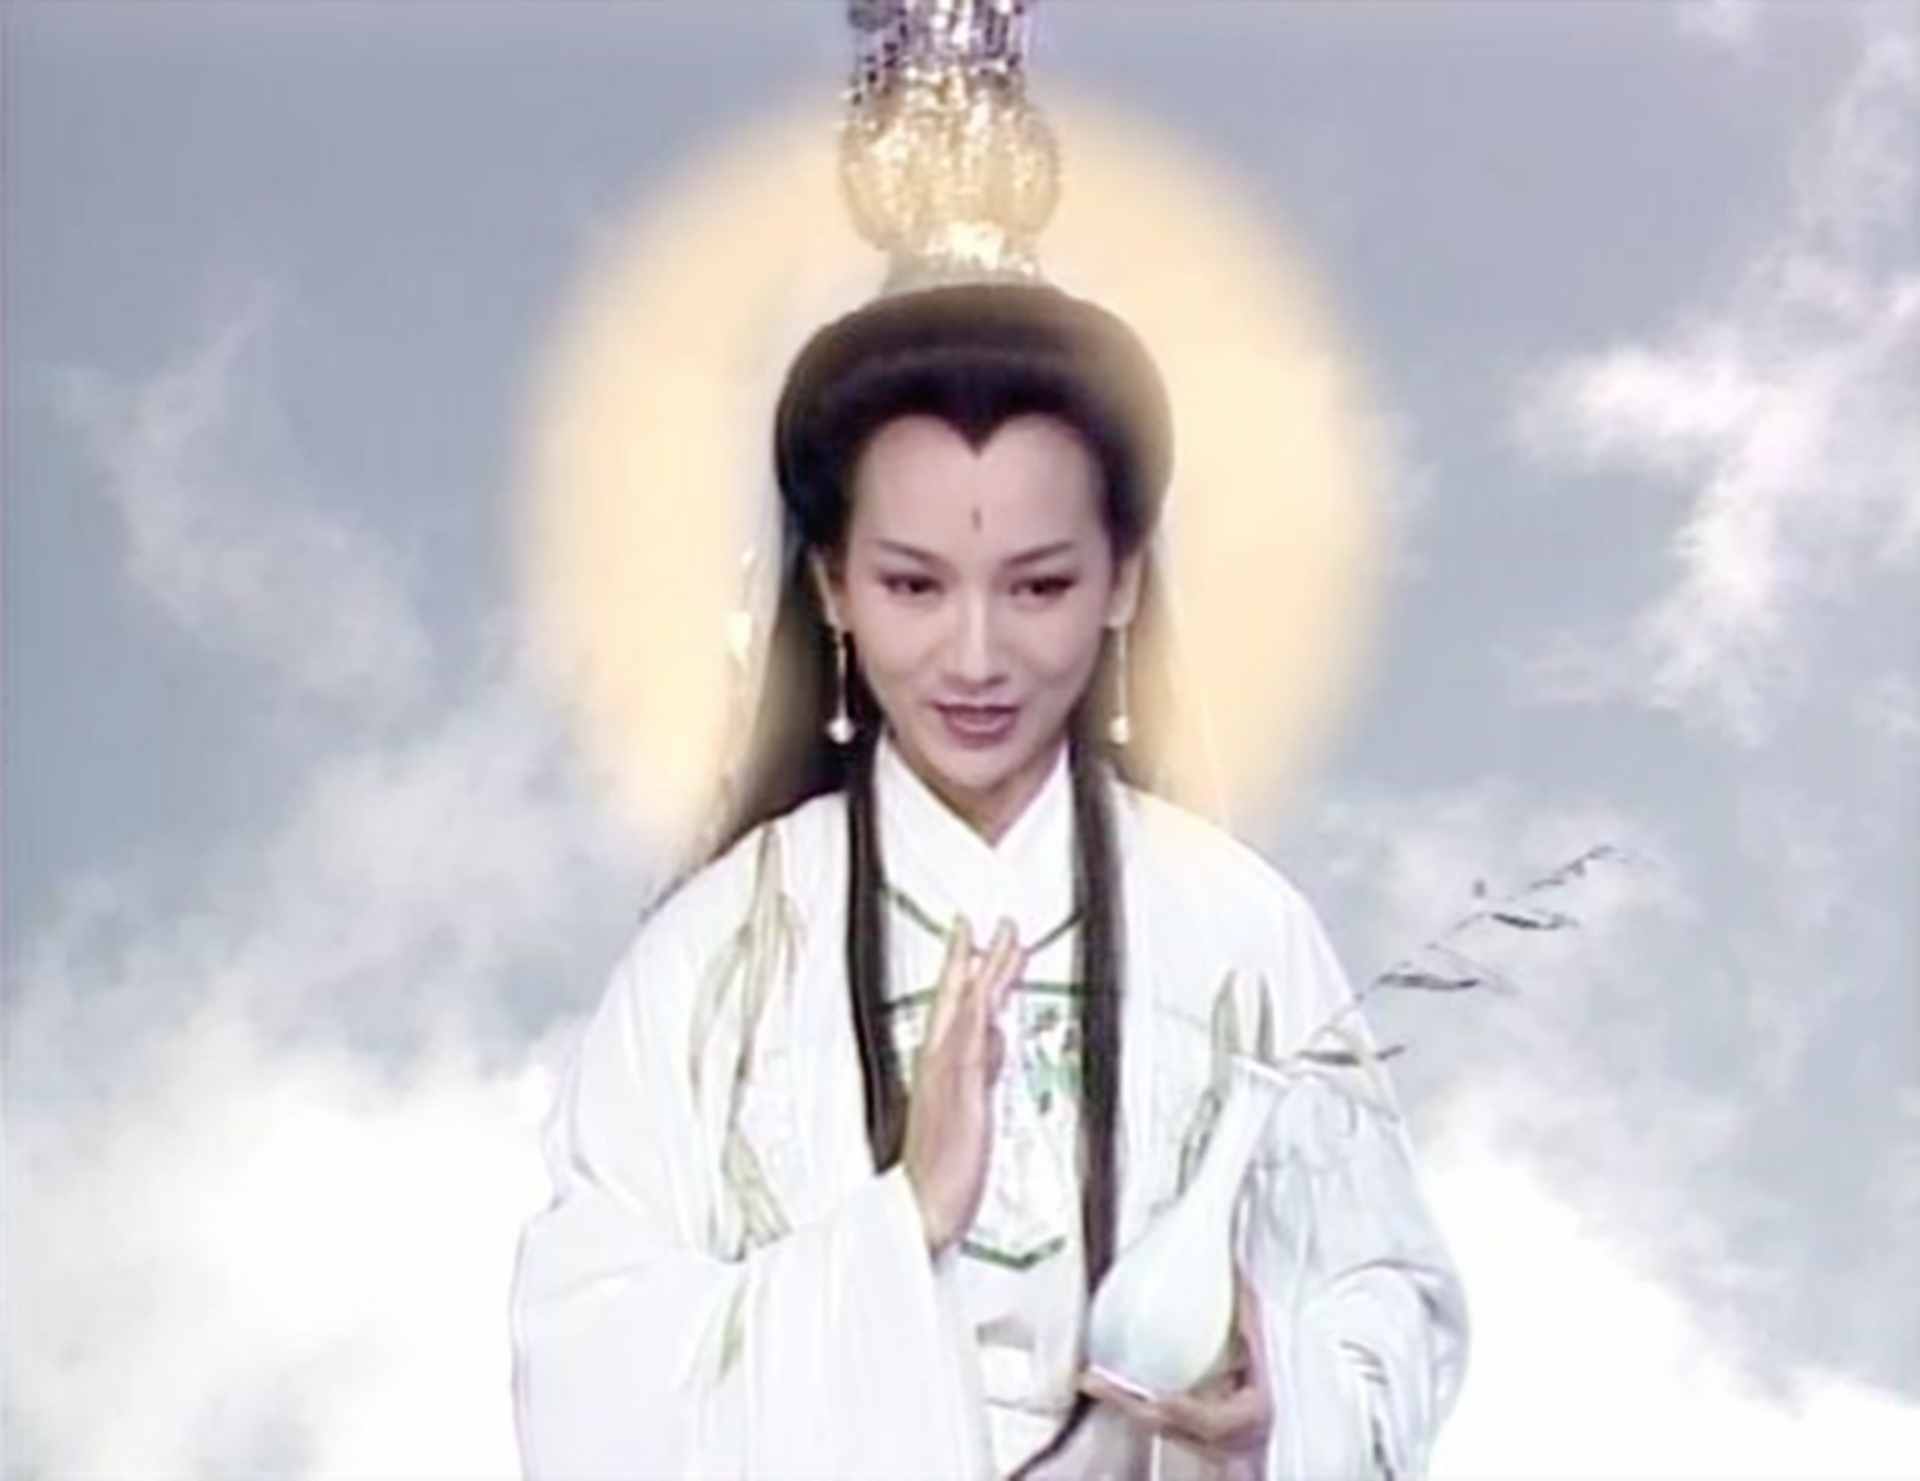 1985年电视剧《观世音》中赵雅芝饰演的女主角讲述的就是妙善悲悯